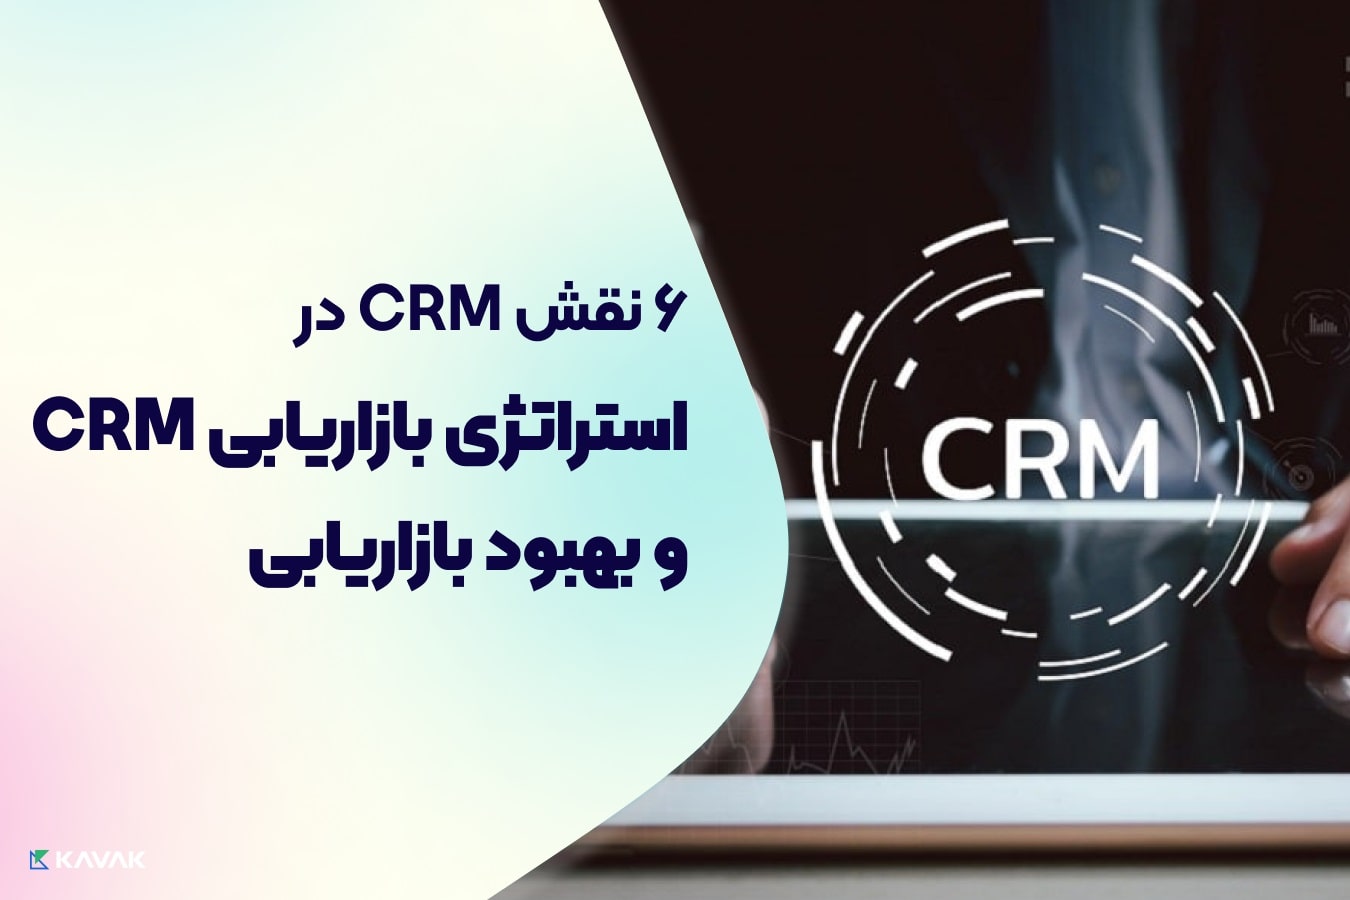 چگونه نرم افزار CRM می تواند به ایجاد یک استراتژی بازاریابی بهتر کمک کند؟